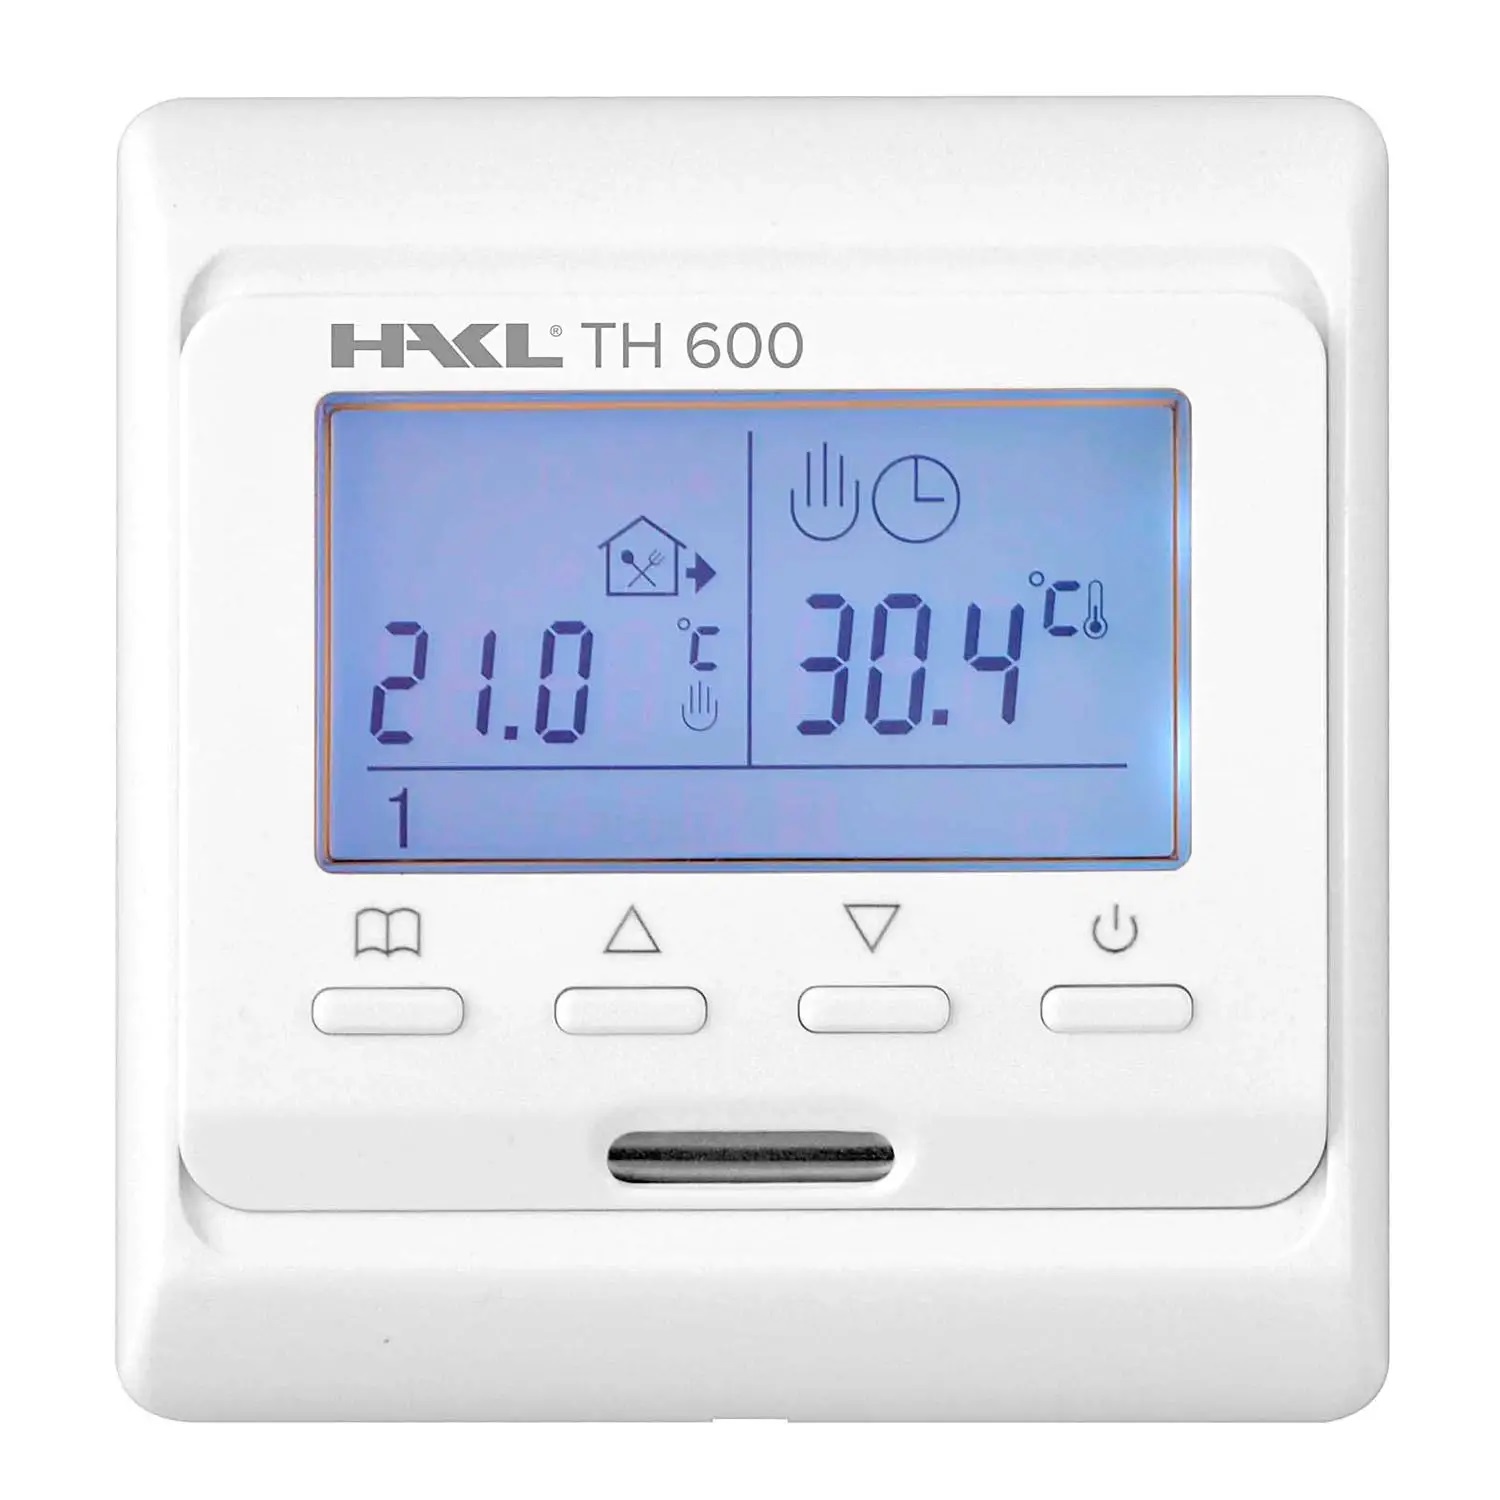 HAKL TH 600 digitálny termostat - Vykurovanie kúpeľne | MasMasaryk